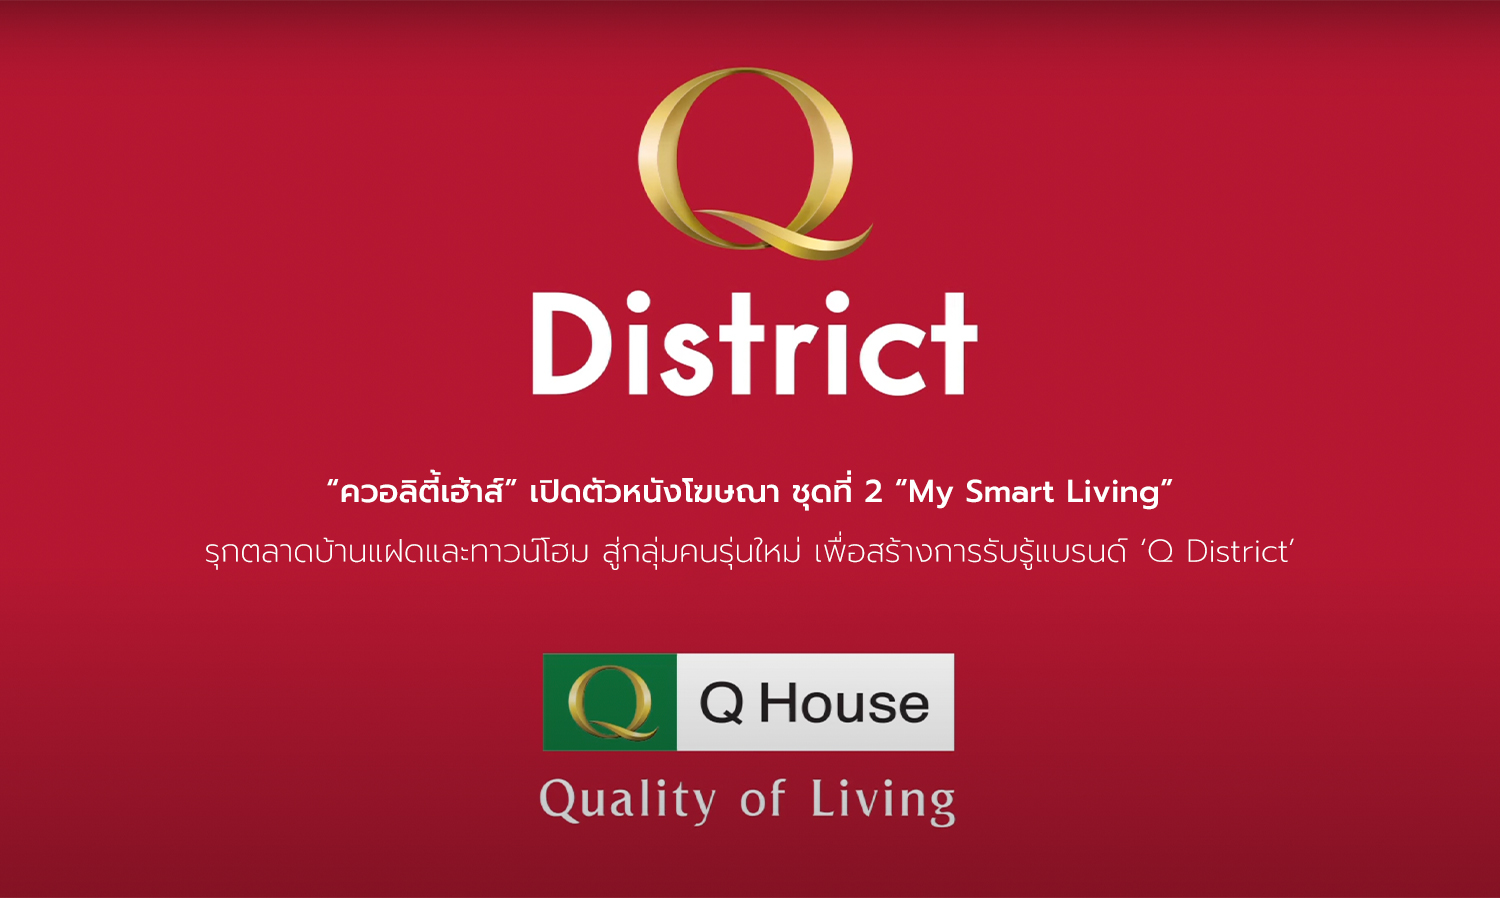 “ควอลิตี้เฮ้าส์” เปิดตัวหนังโฆษณา ชุดที่ 2 “My Smart Living” รุกตลาดบ้านแฝดและทาวน์โฮม สู่กลุ่มคนรุ่นใหม่ เพื่อสร้างการรับรู้แบรนด์ ‘Q District’